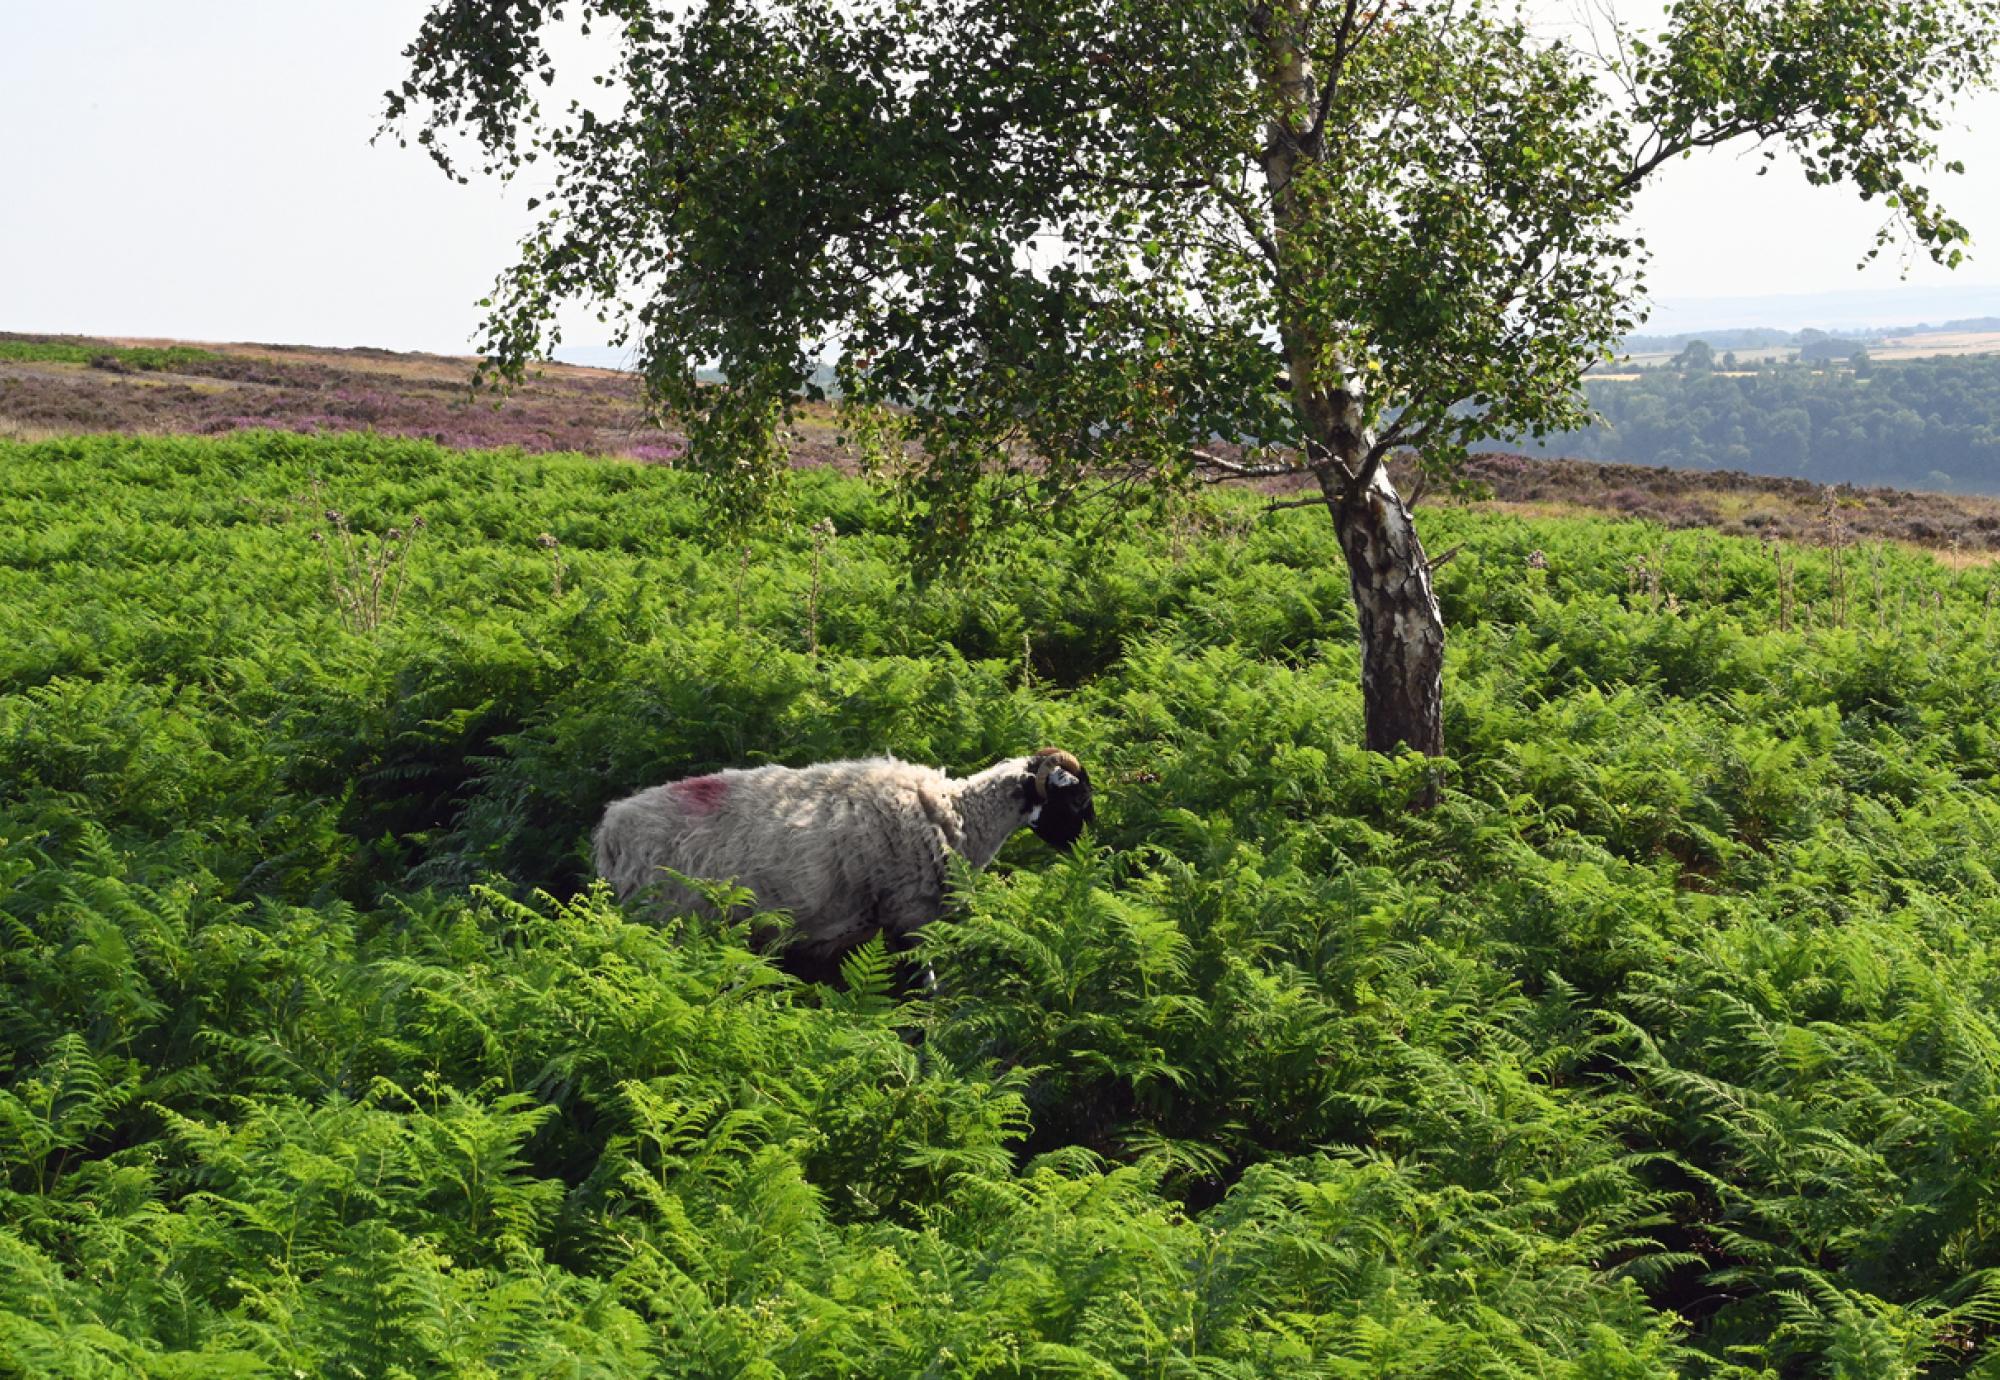 Sheep in a field in Ryedale